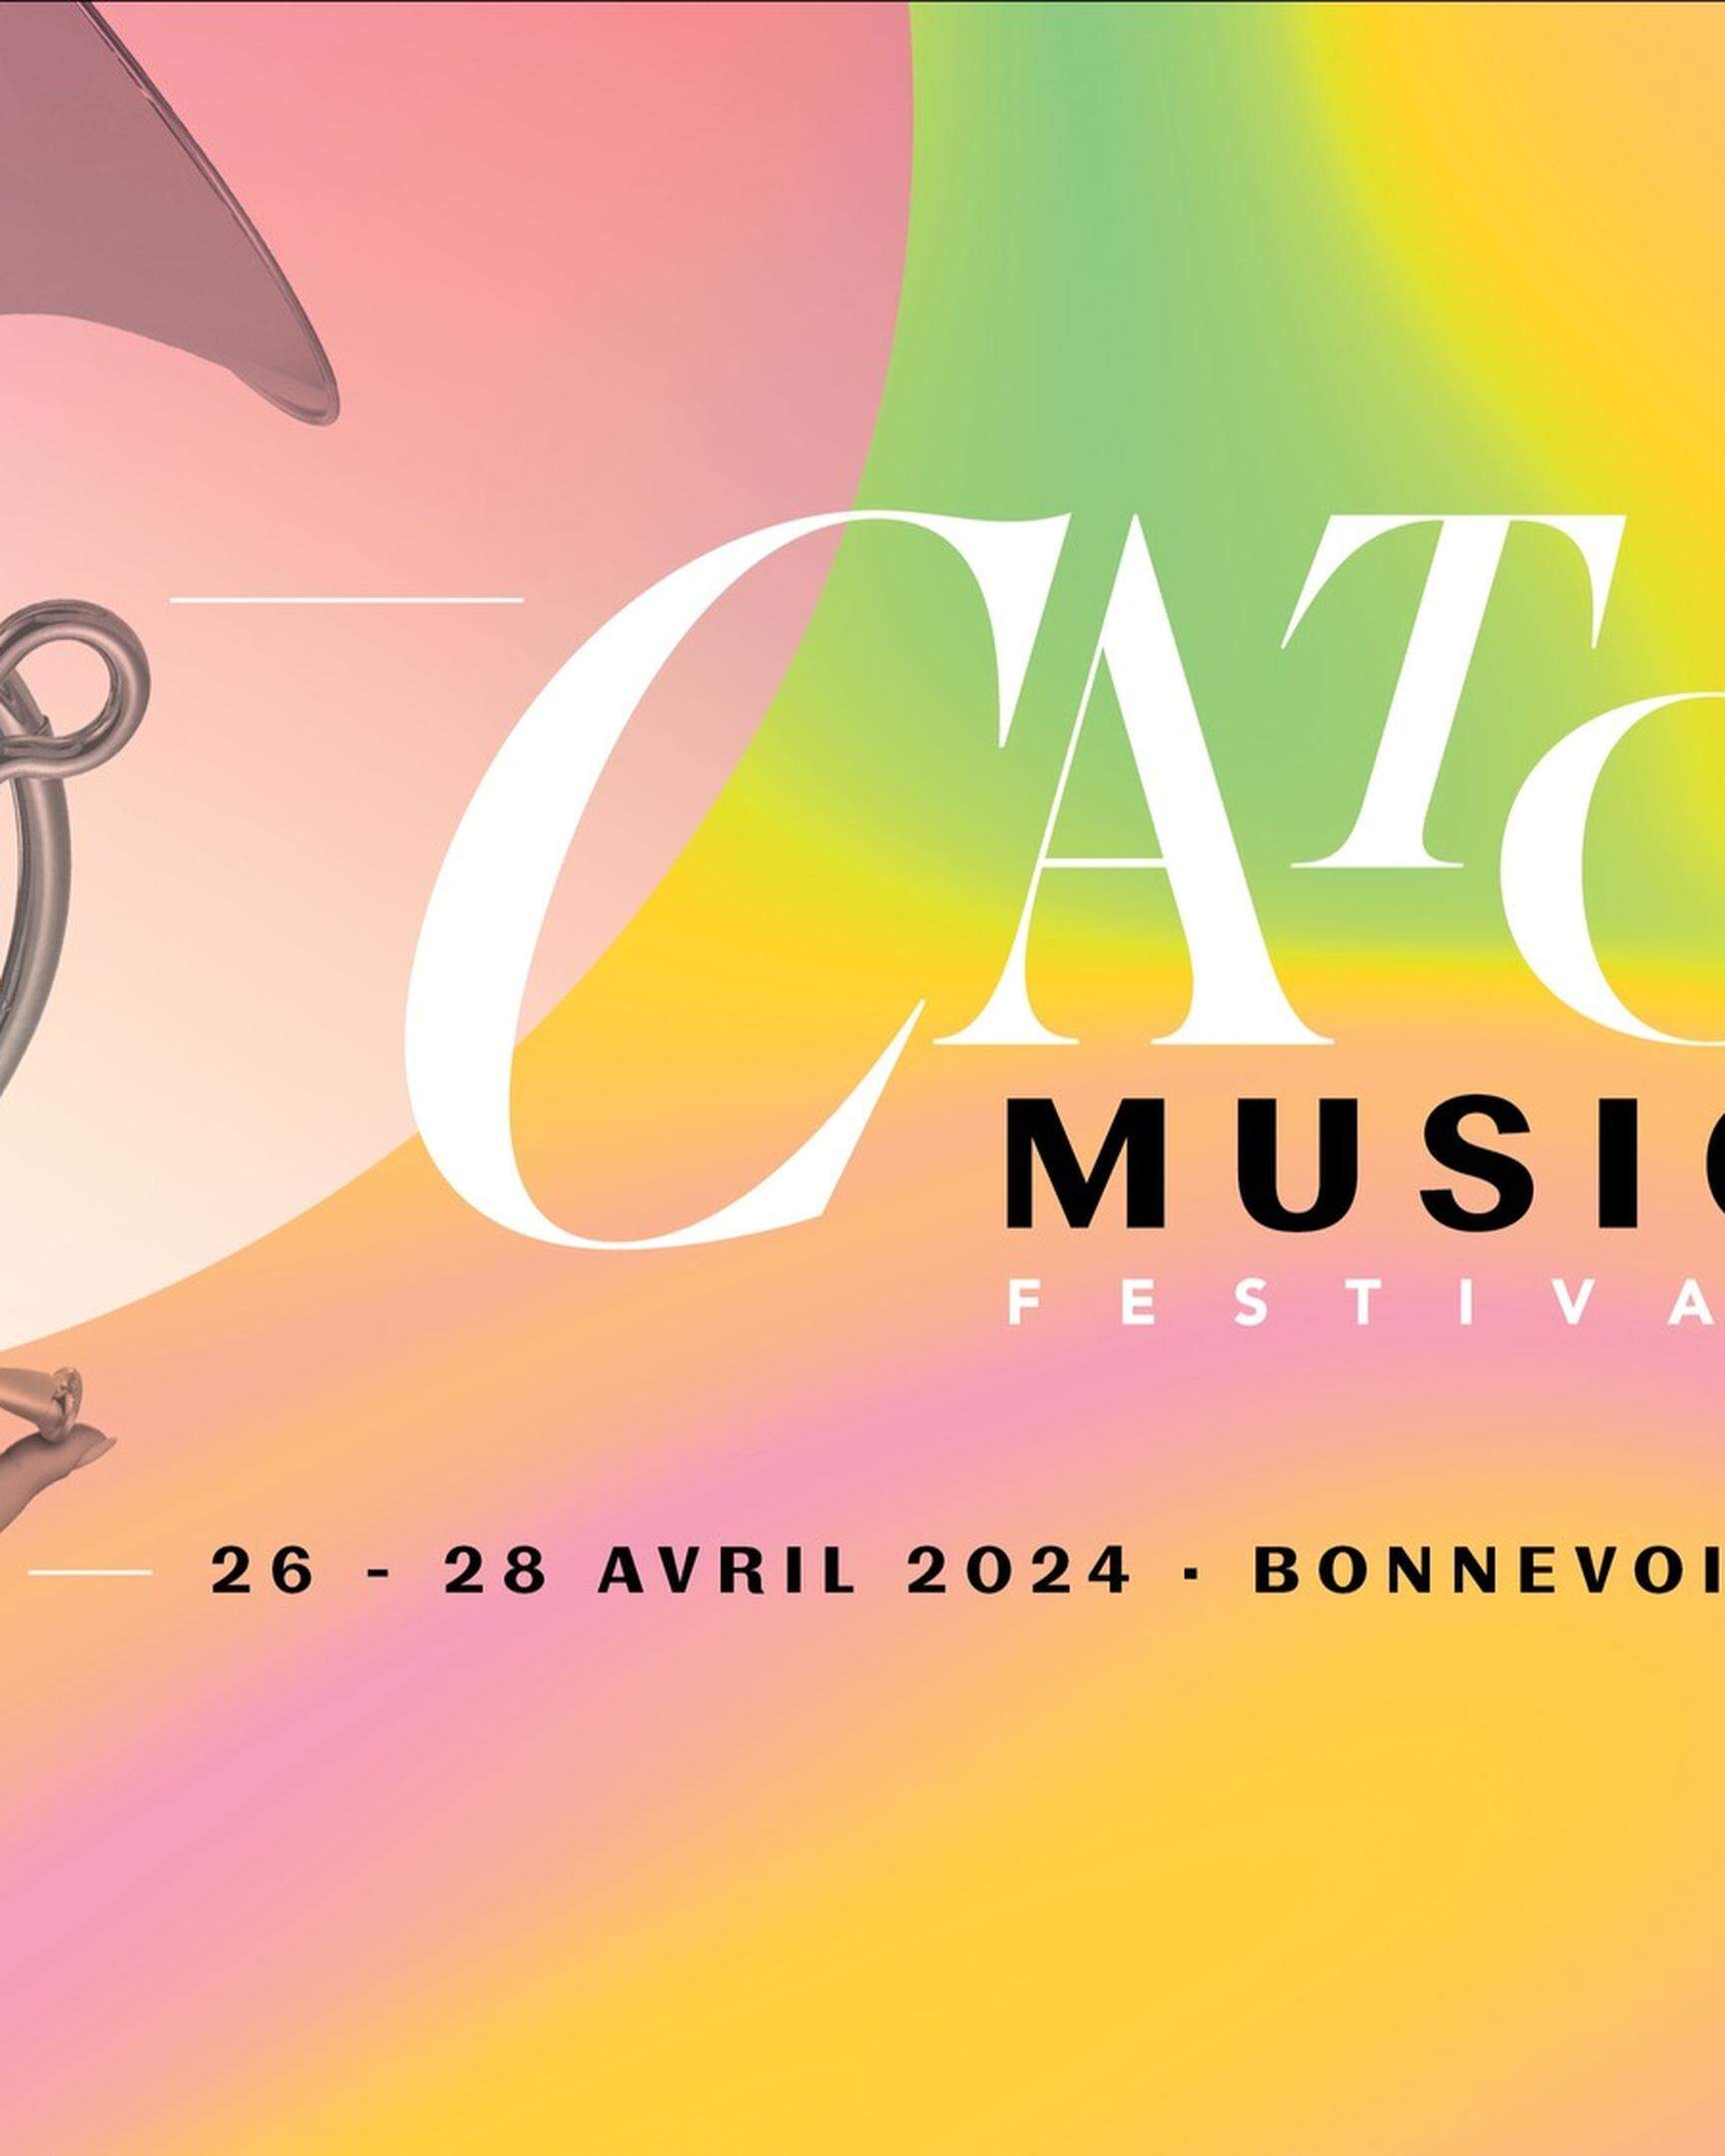 Das Catch Music Festival geht dieses Jahr in die dritte Runde.